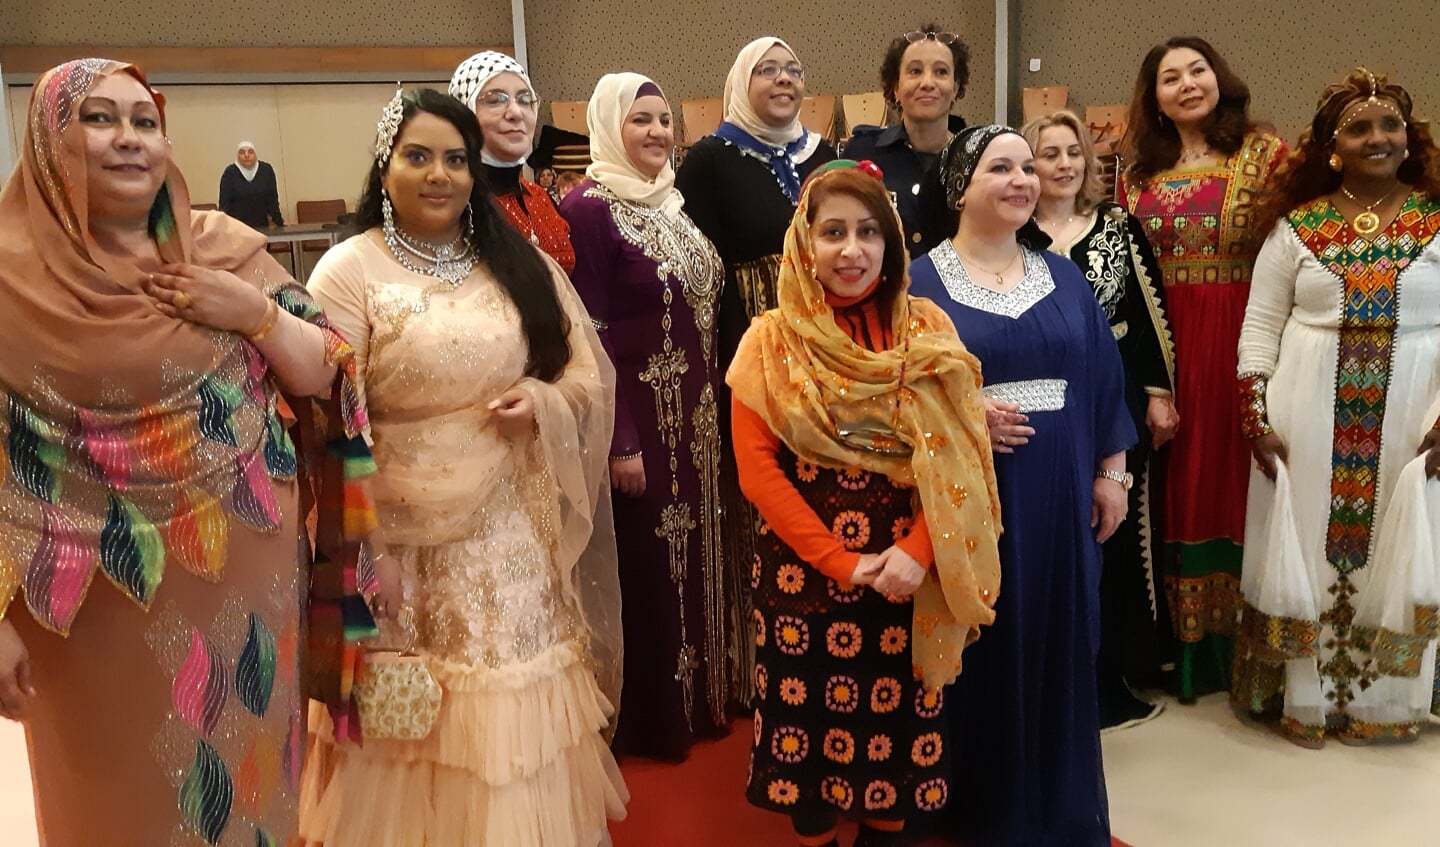 Directeur Welzijn Rijswijk Miriam Bryson te midden van de vrouwen die afgelopen zondag op de rode loper een modeshow gaven in authentieke kleding van hun land.